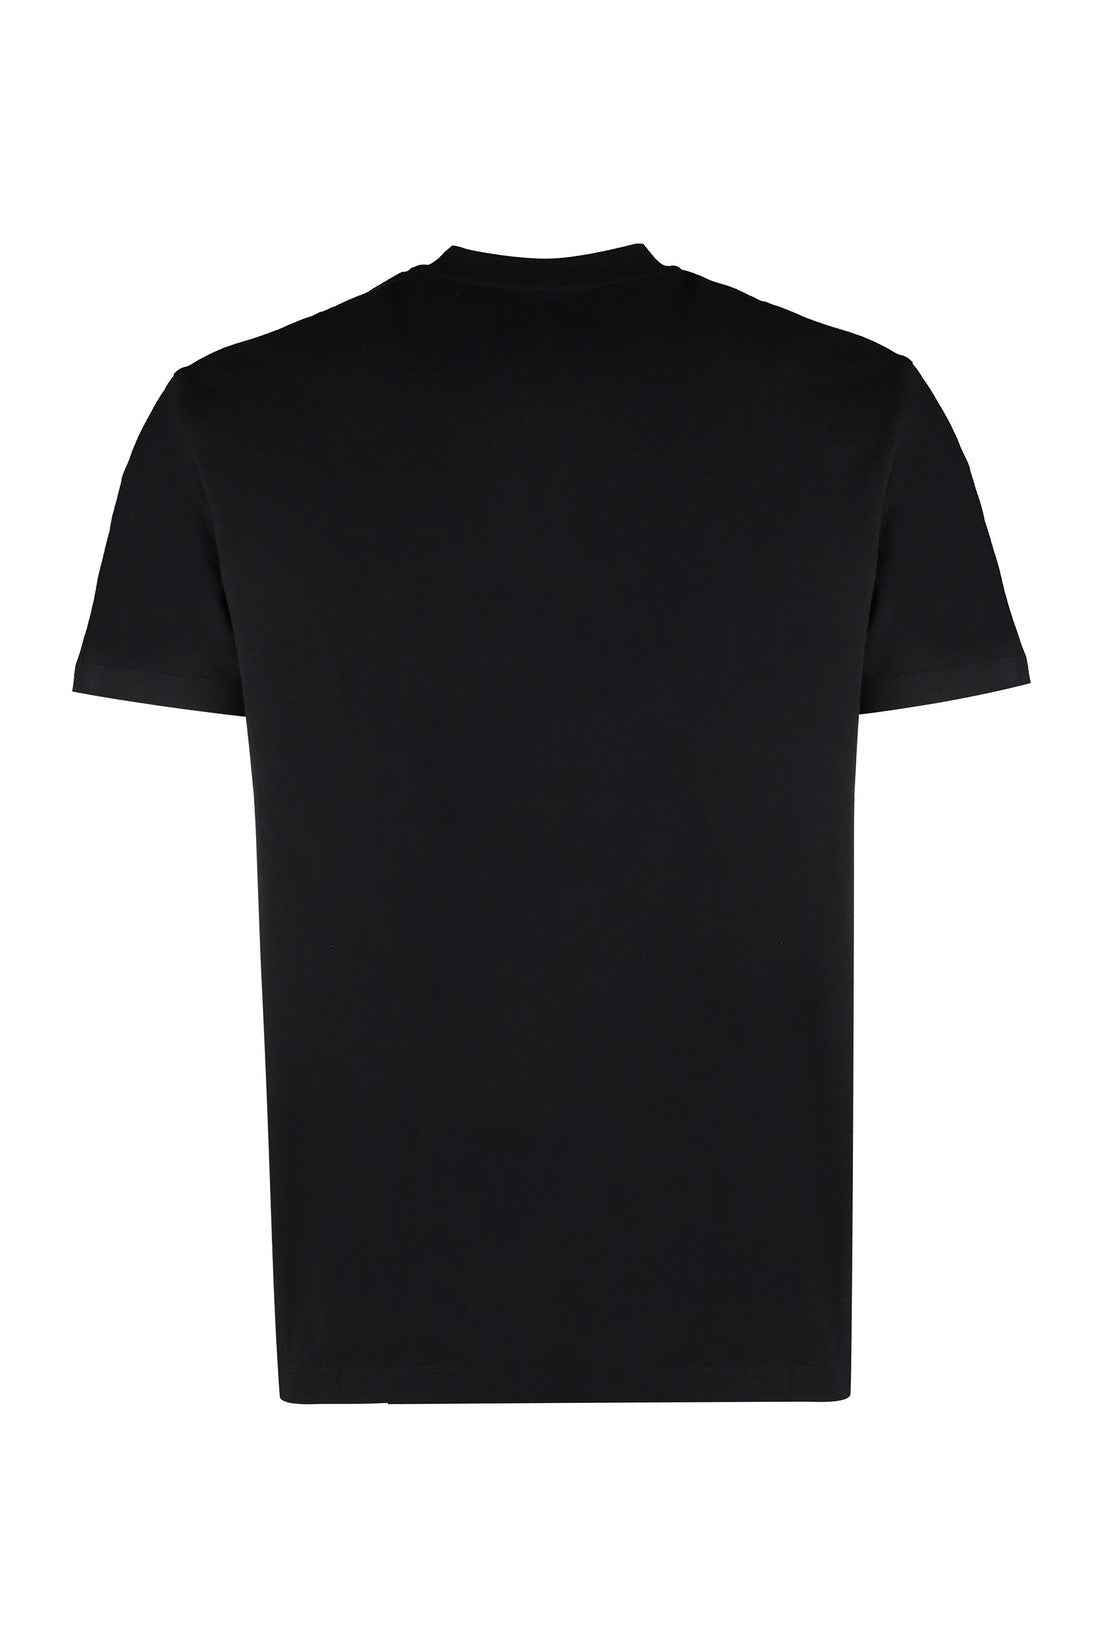 FERRAGAMO-OUTLET-SALE-Cotton crew-neck T-shirt-ARCHIVIST